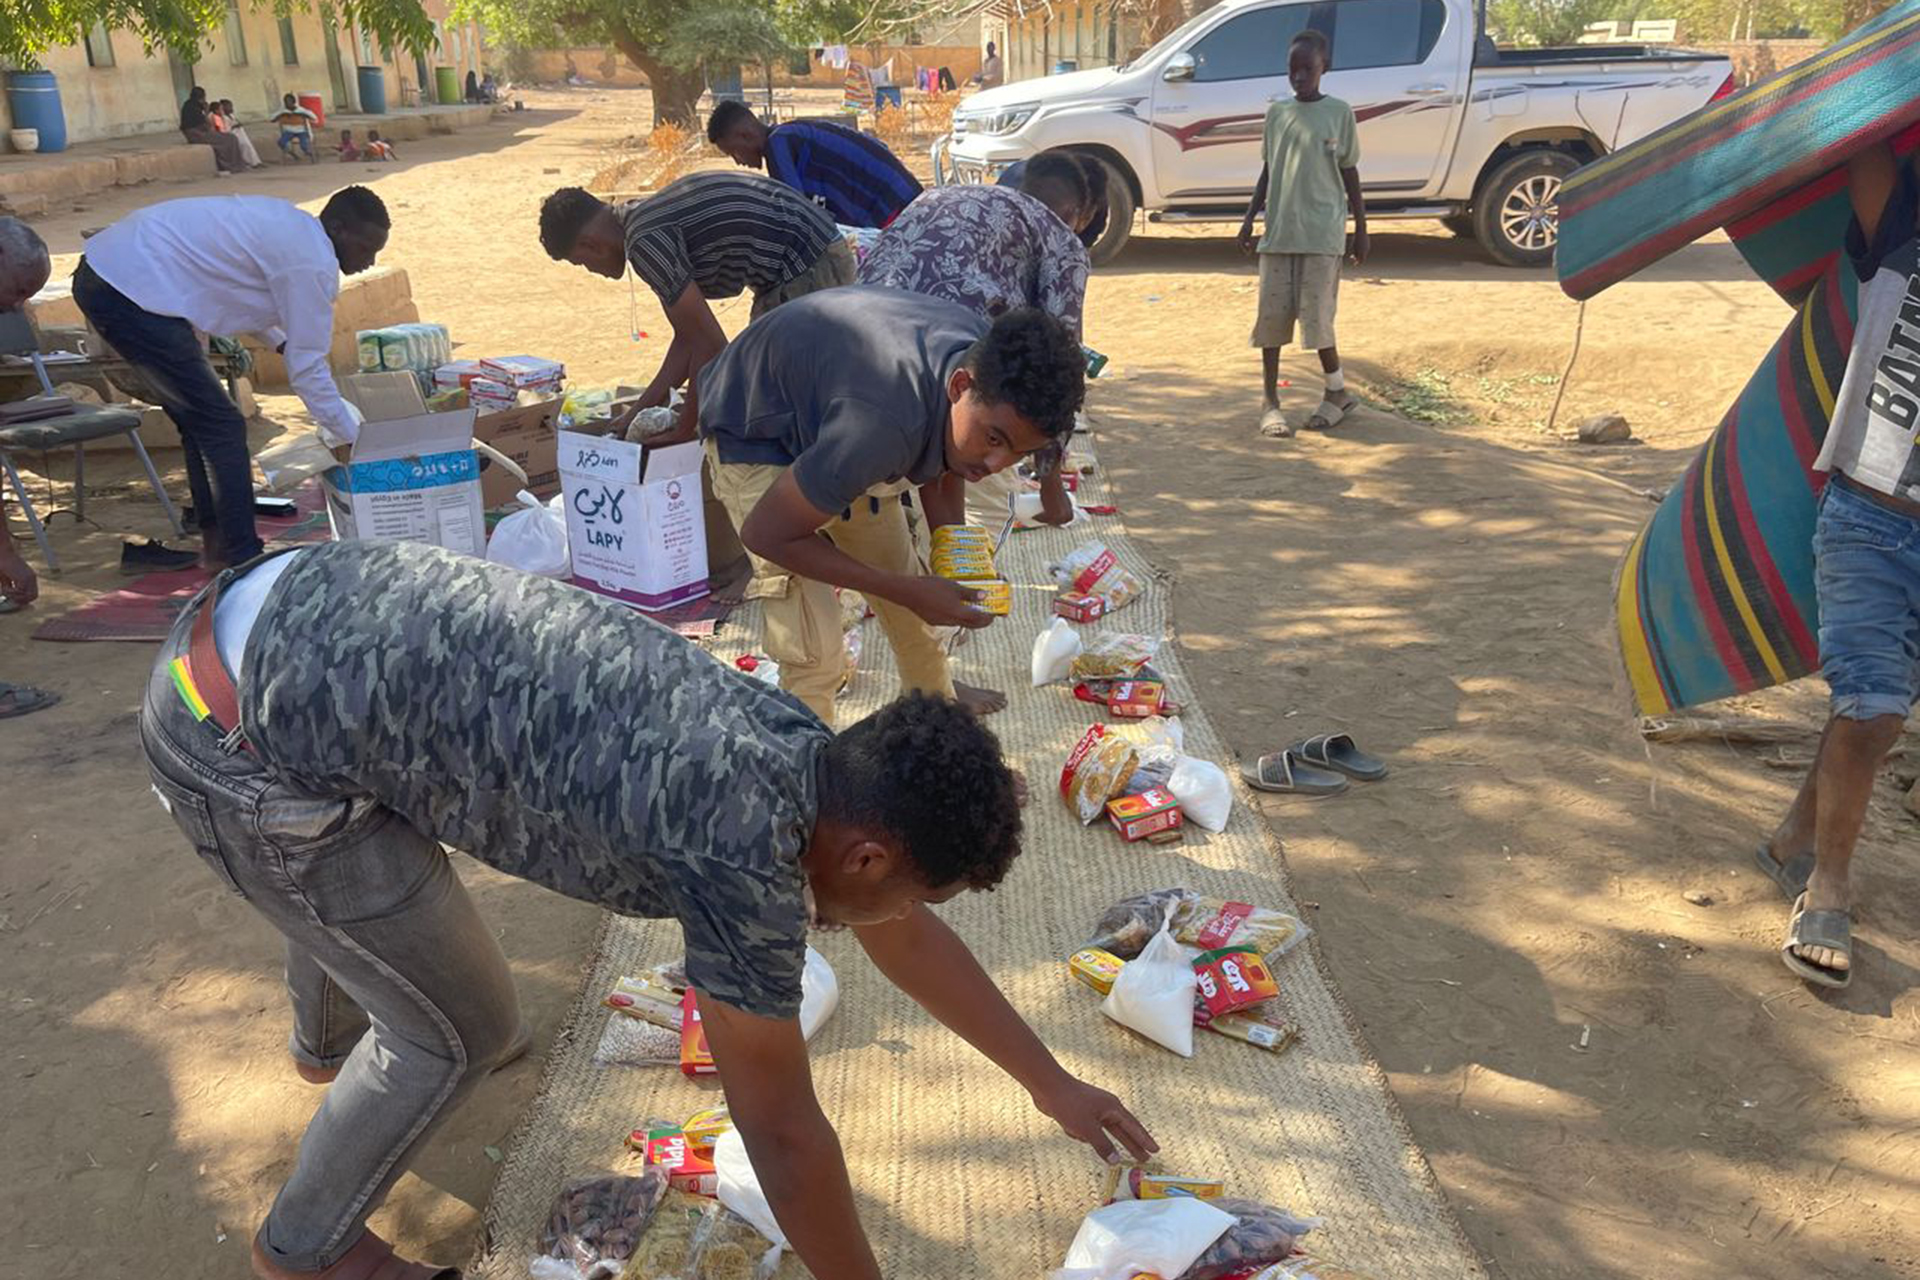 مبادرات شعبية في كسلا توفر السكن والطعام لنازحي السودان | أخبار – البوكس نيوز